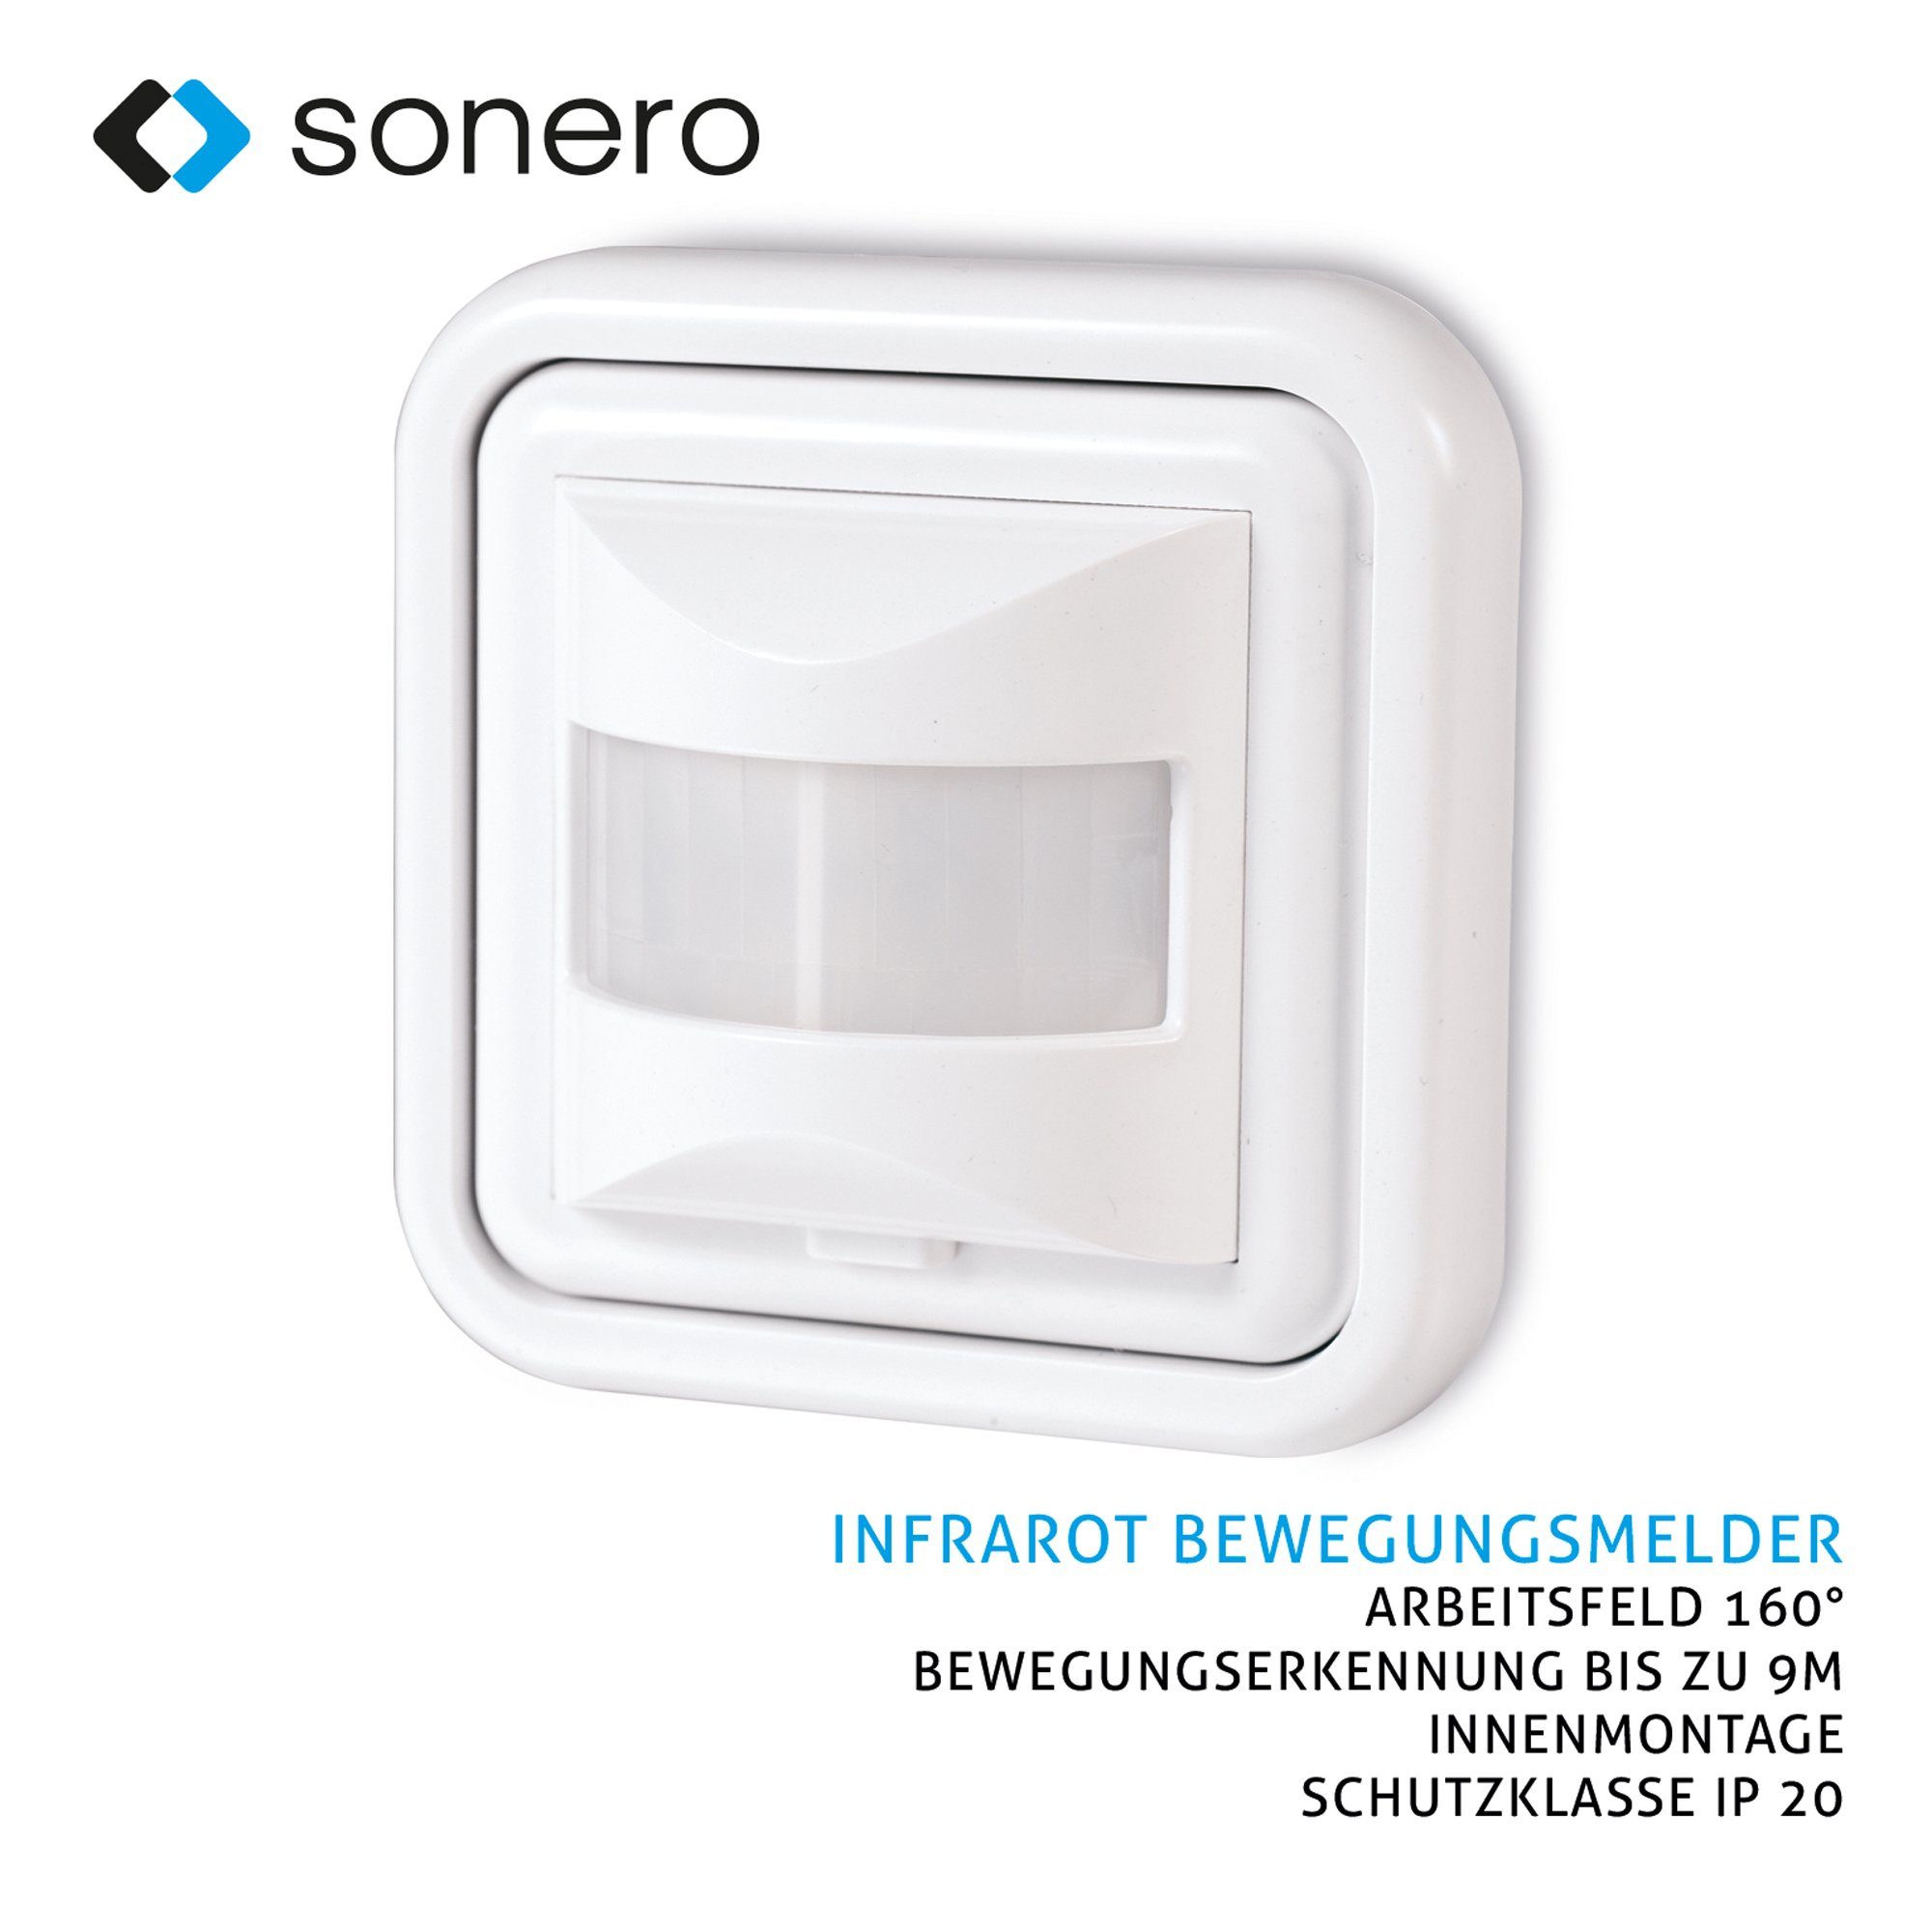 Infrarot-Bewegungsmelder weiß, - Schutzkl Sonero Innenmontage, sonero X-IM050 Bewegungsmelder